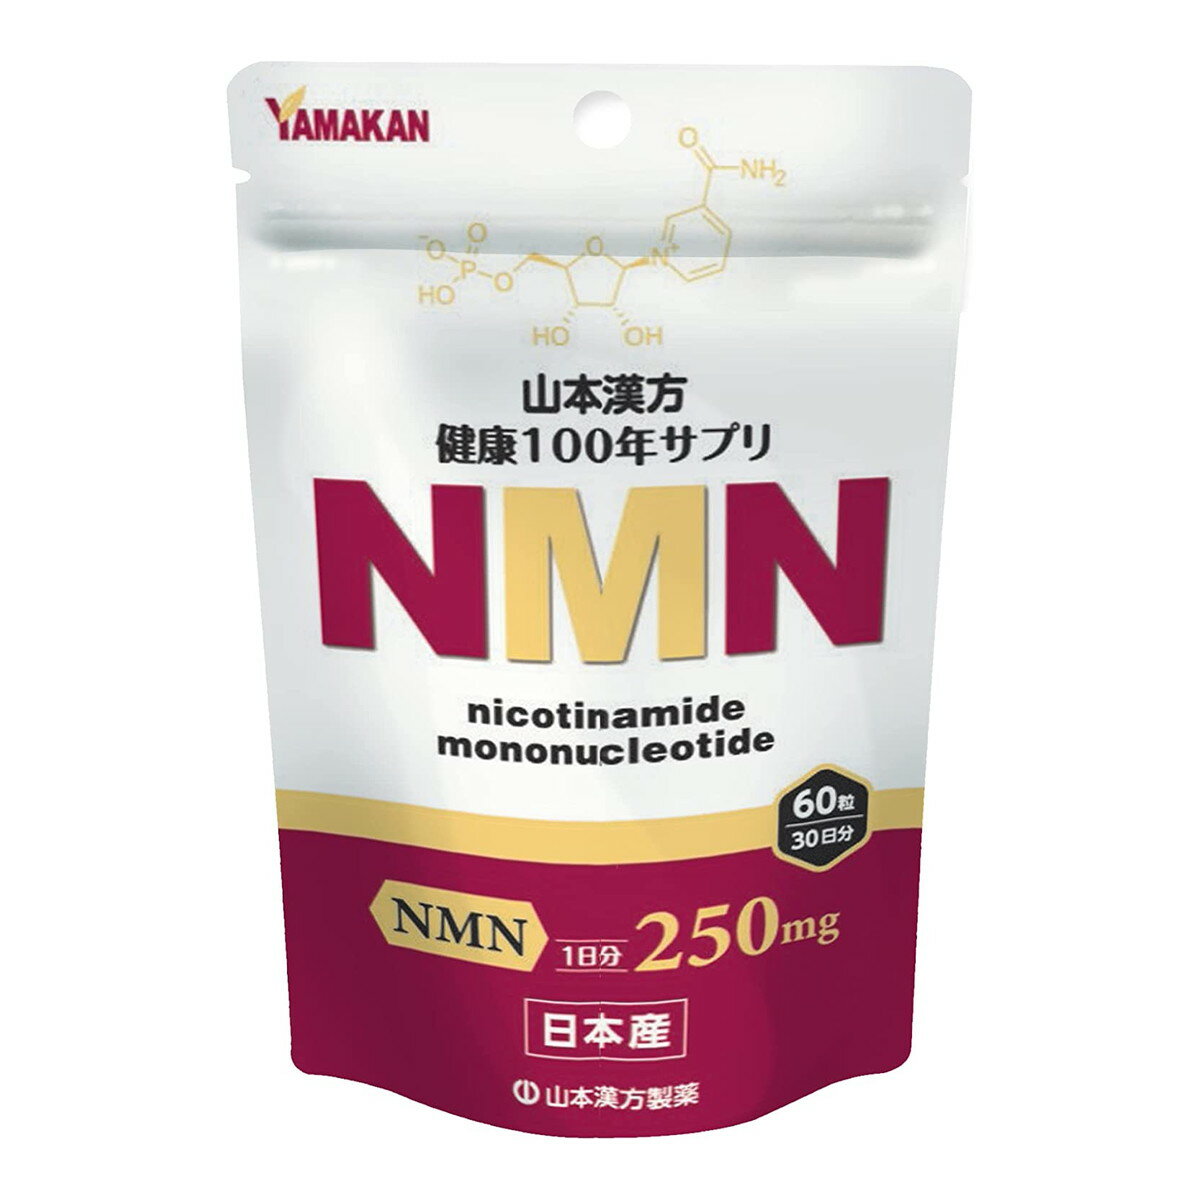 【送料込】<strong>山本漢方</strong> NMN 粒 ニコチンアミド・モノ・ヌレオチド 60粒入 1個